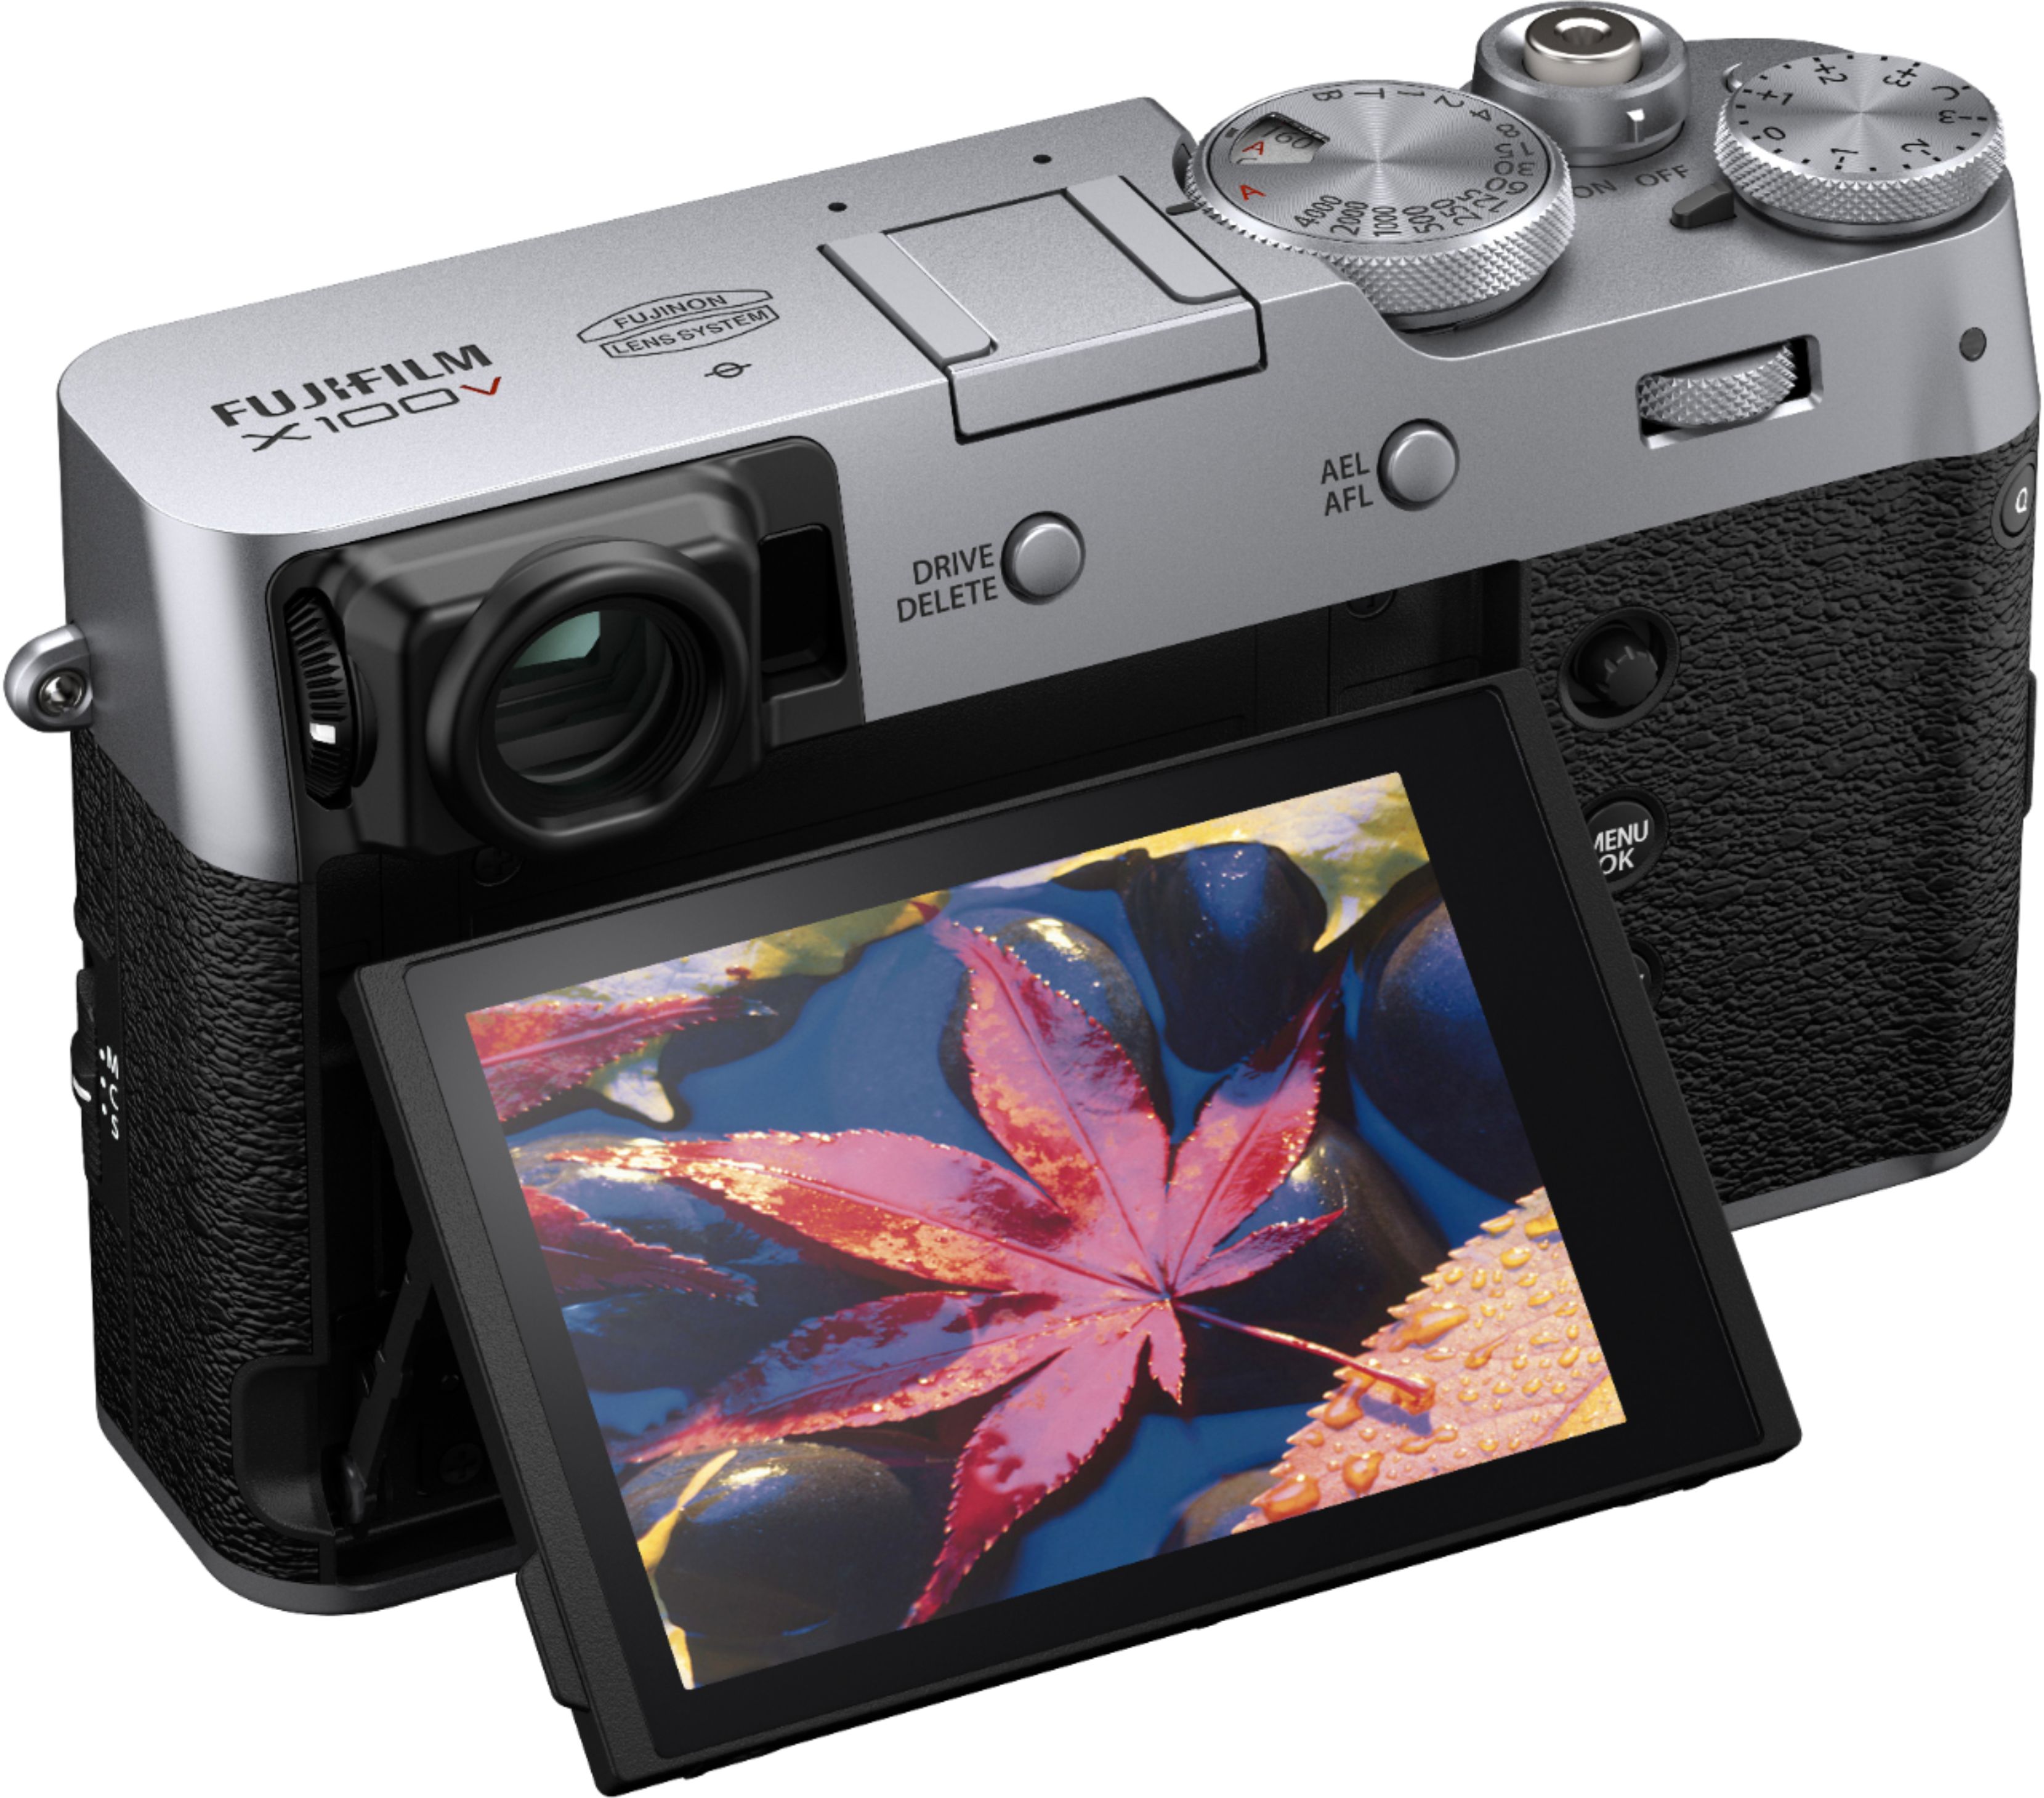  Fujifilm X100V Digital Camera (Silver) Bundle